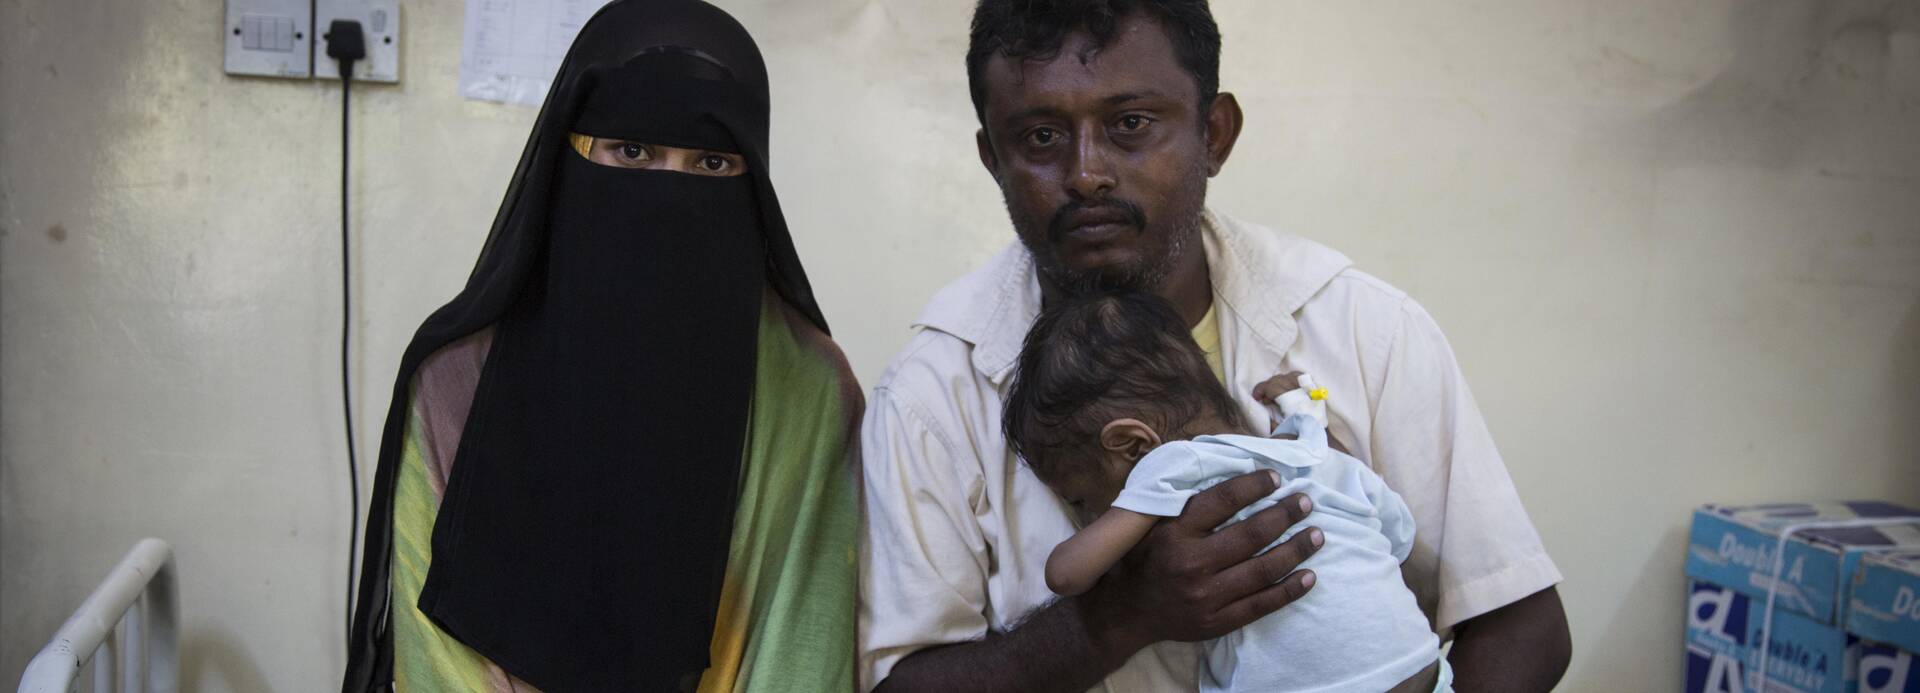 Familie in Gesundheitsstation von Aktion gegen den Hunger im Jemen